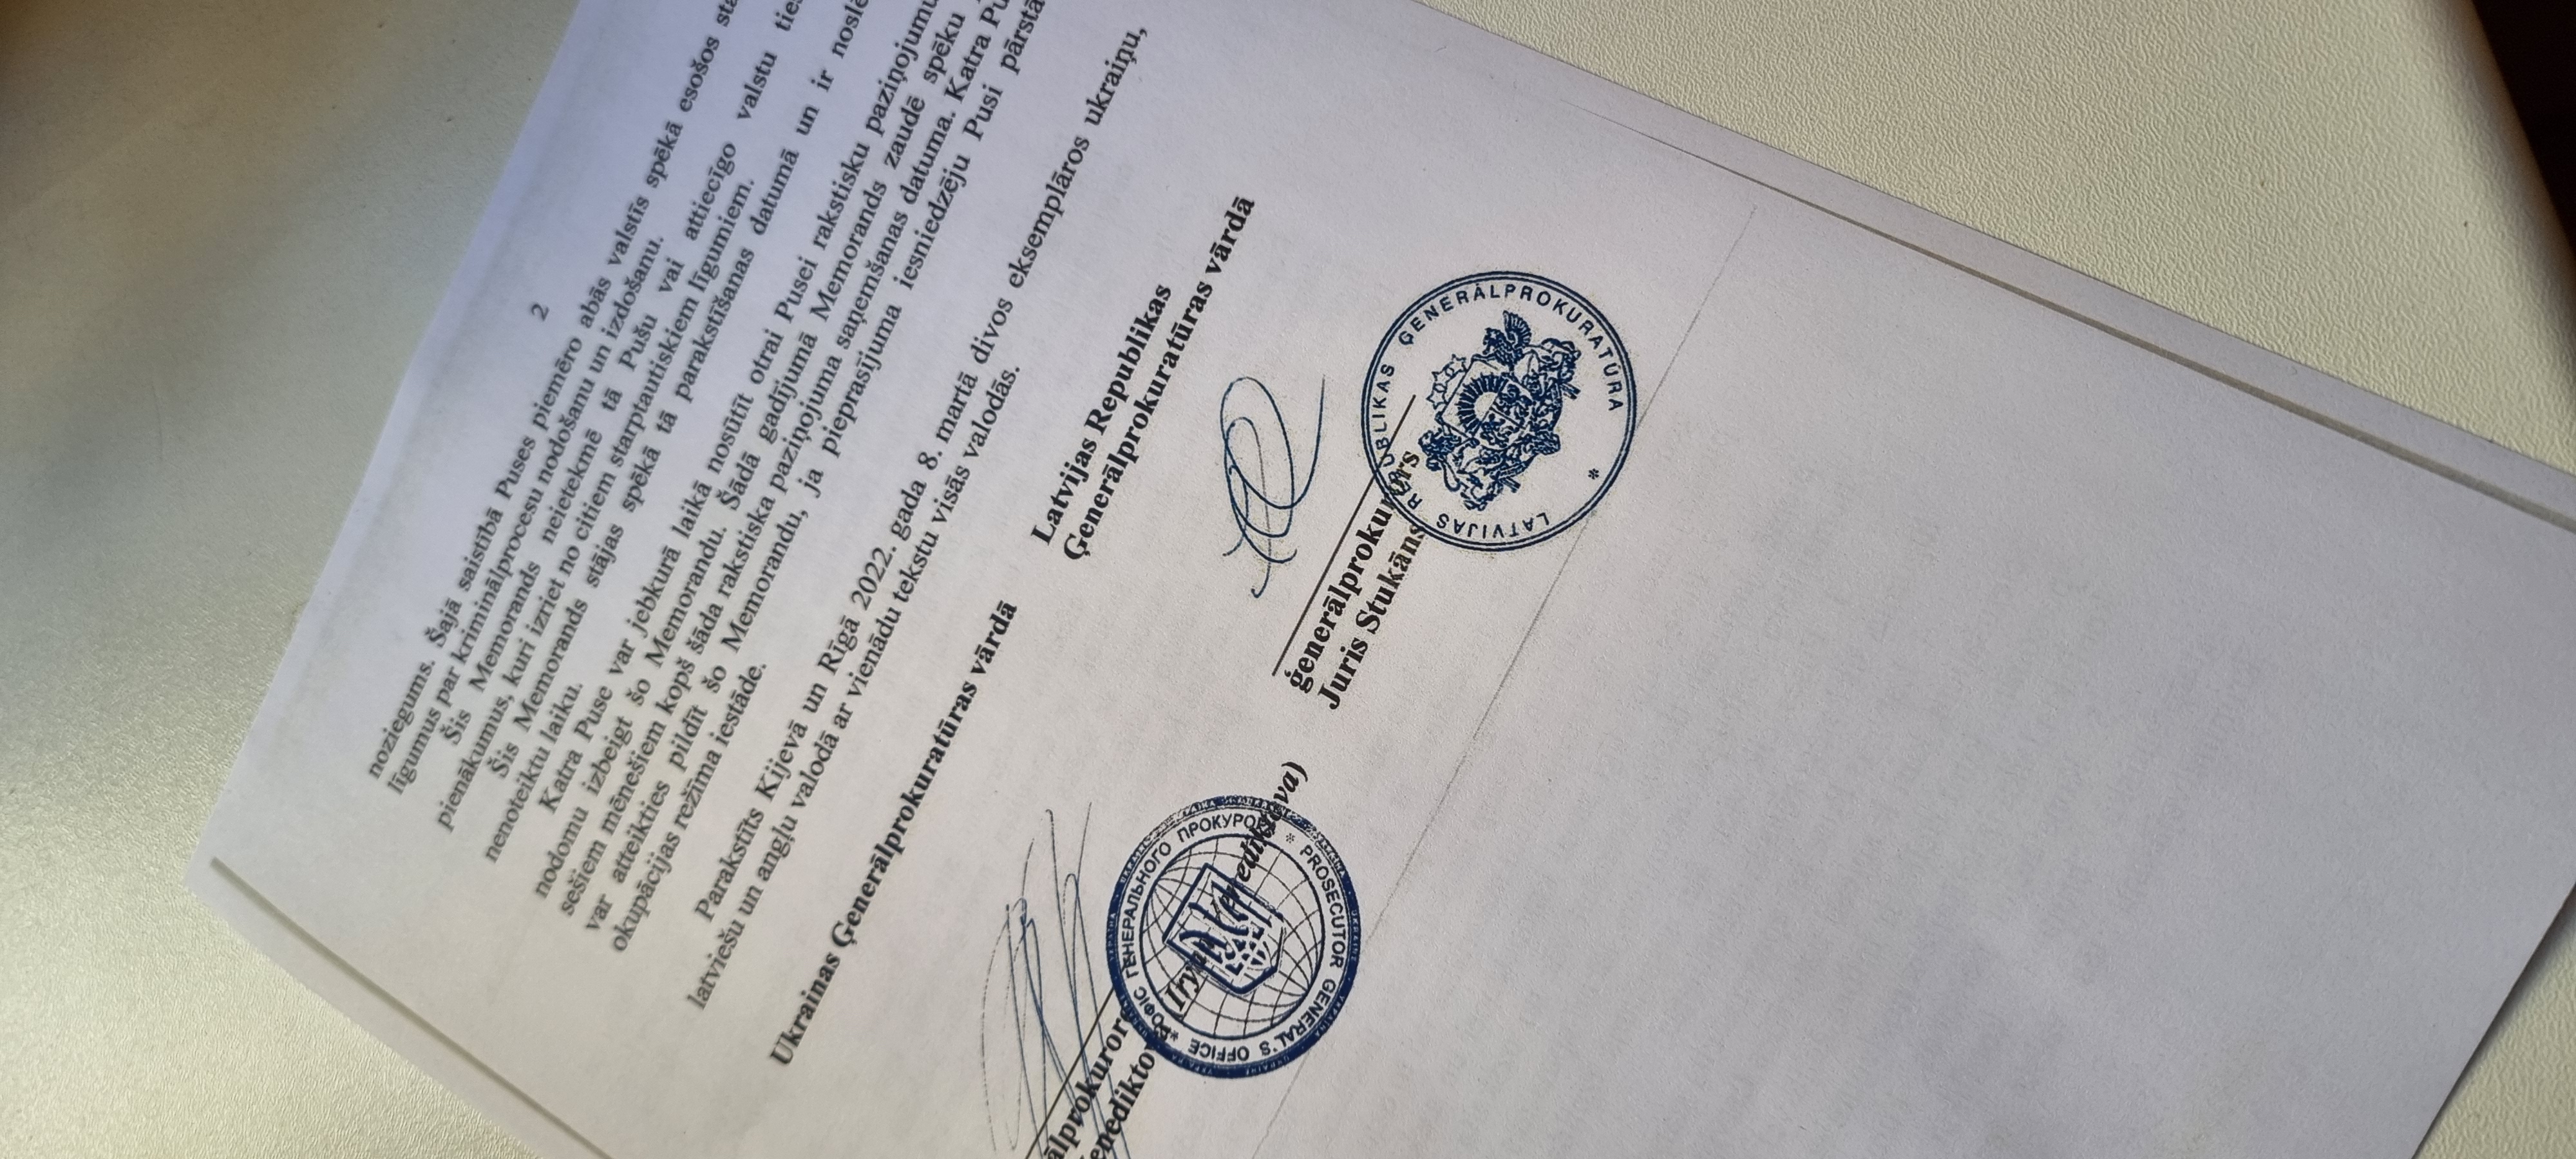 Latvijas Republikas Ģenerālprokuratūra noslēgusi Memorandu par sadarbību ar Ukrainas Ģenerālprokuratūru